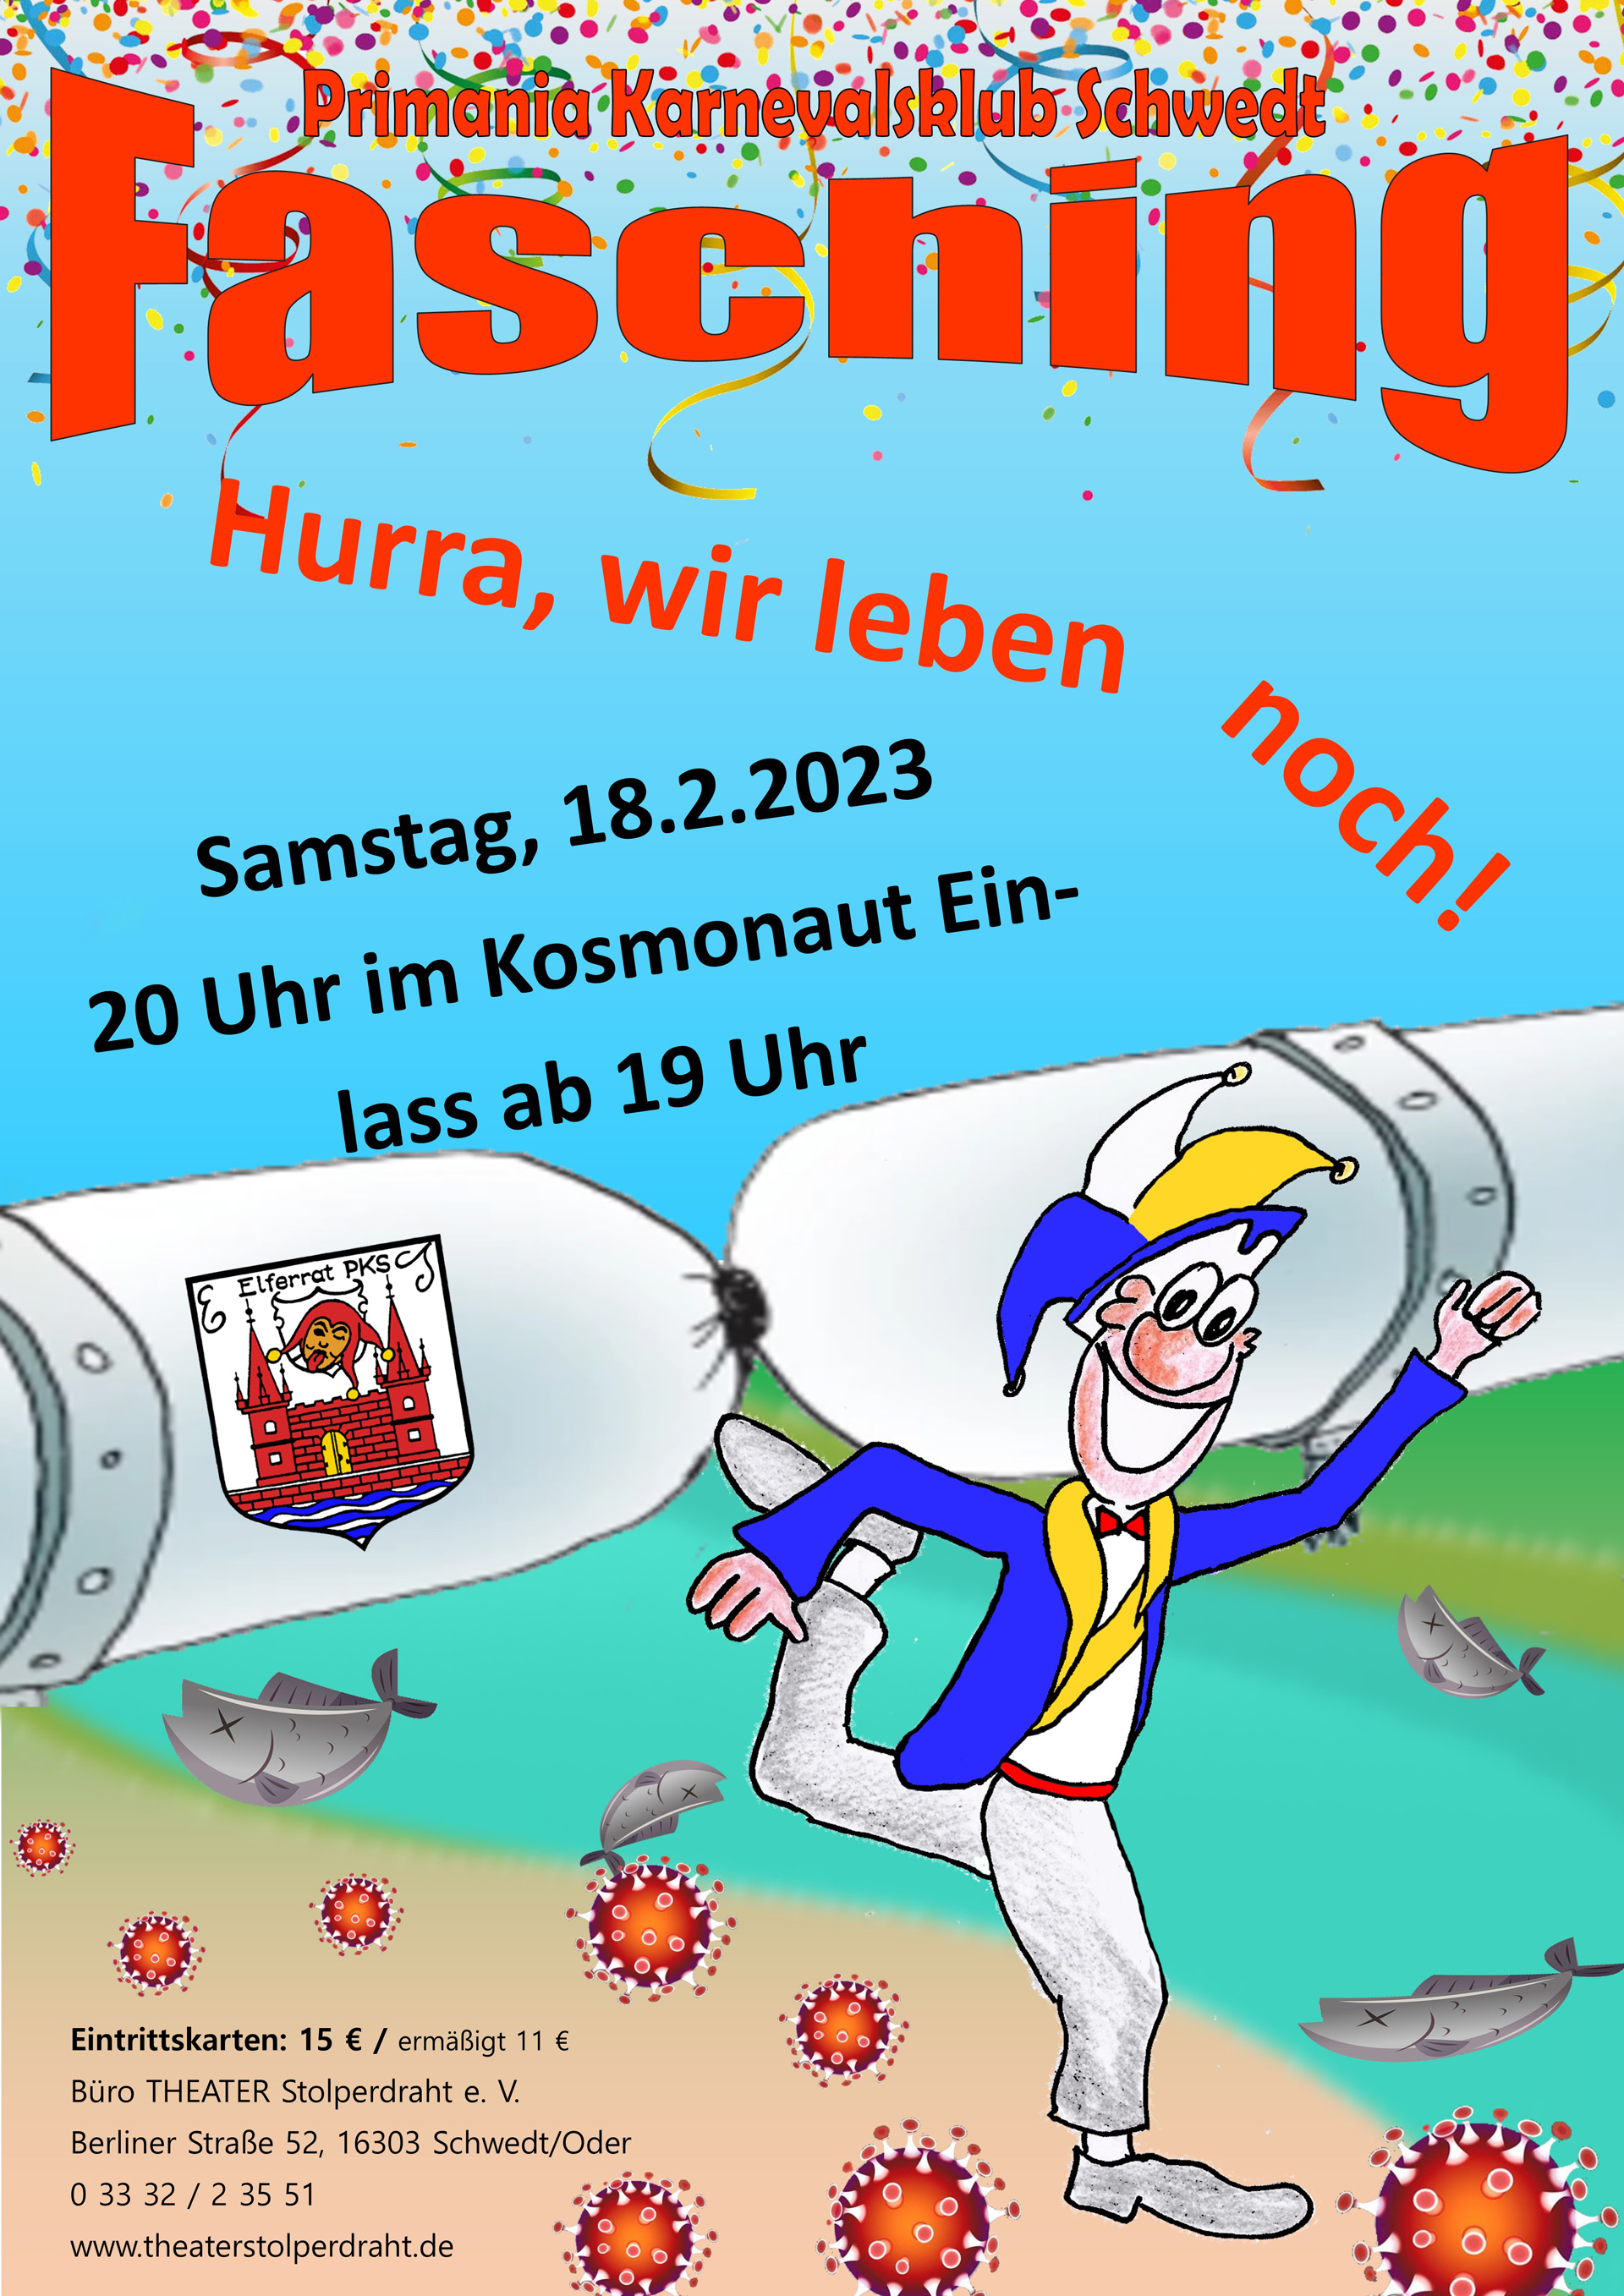 Plakat: Zeichnung tanzender Karnevalist vor zugedrehter Pipeline, Veranstaltungsdaten